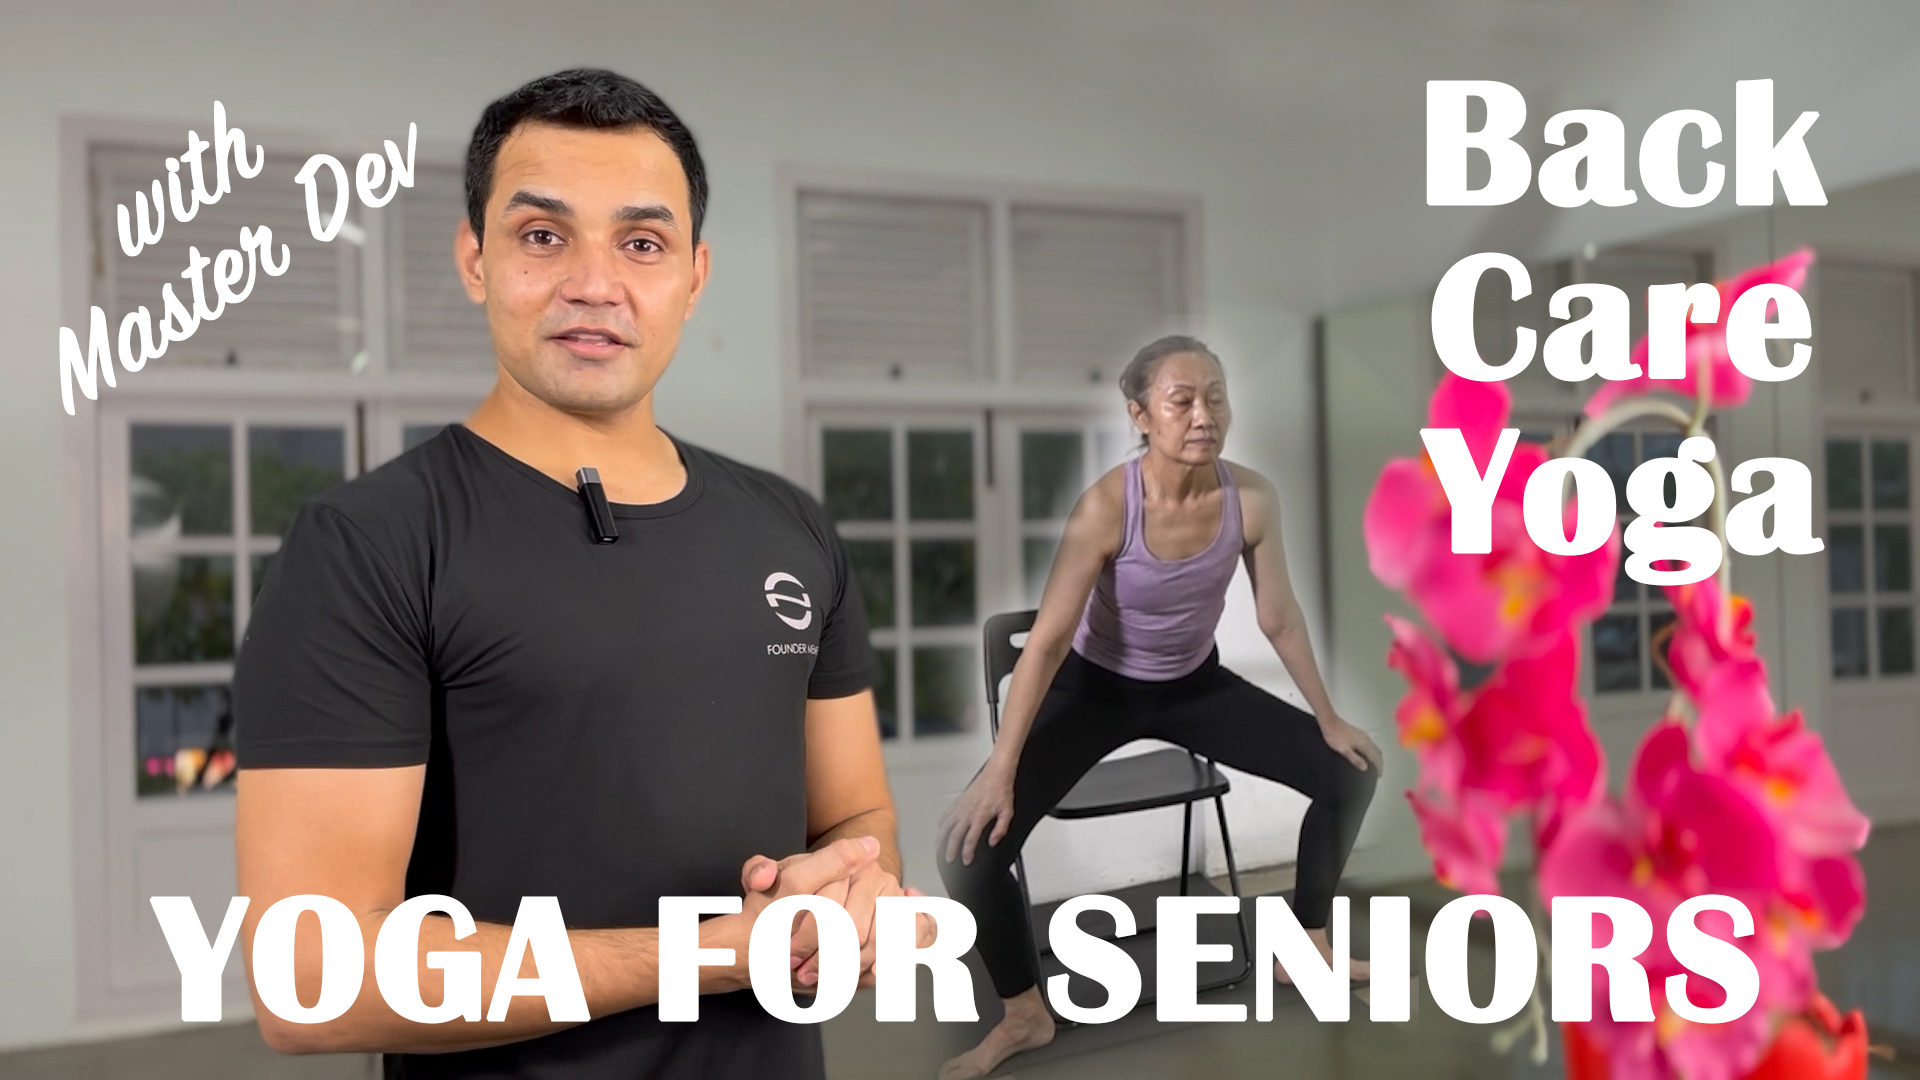 Ep 2 - Backcare Yoga